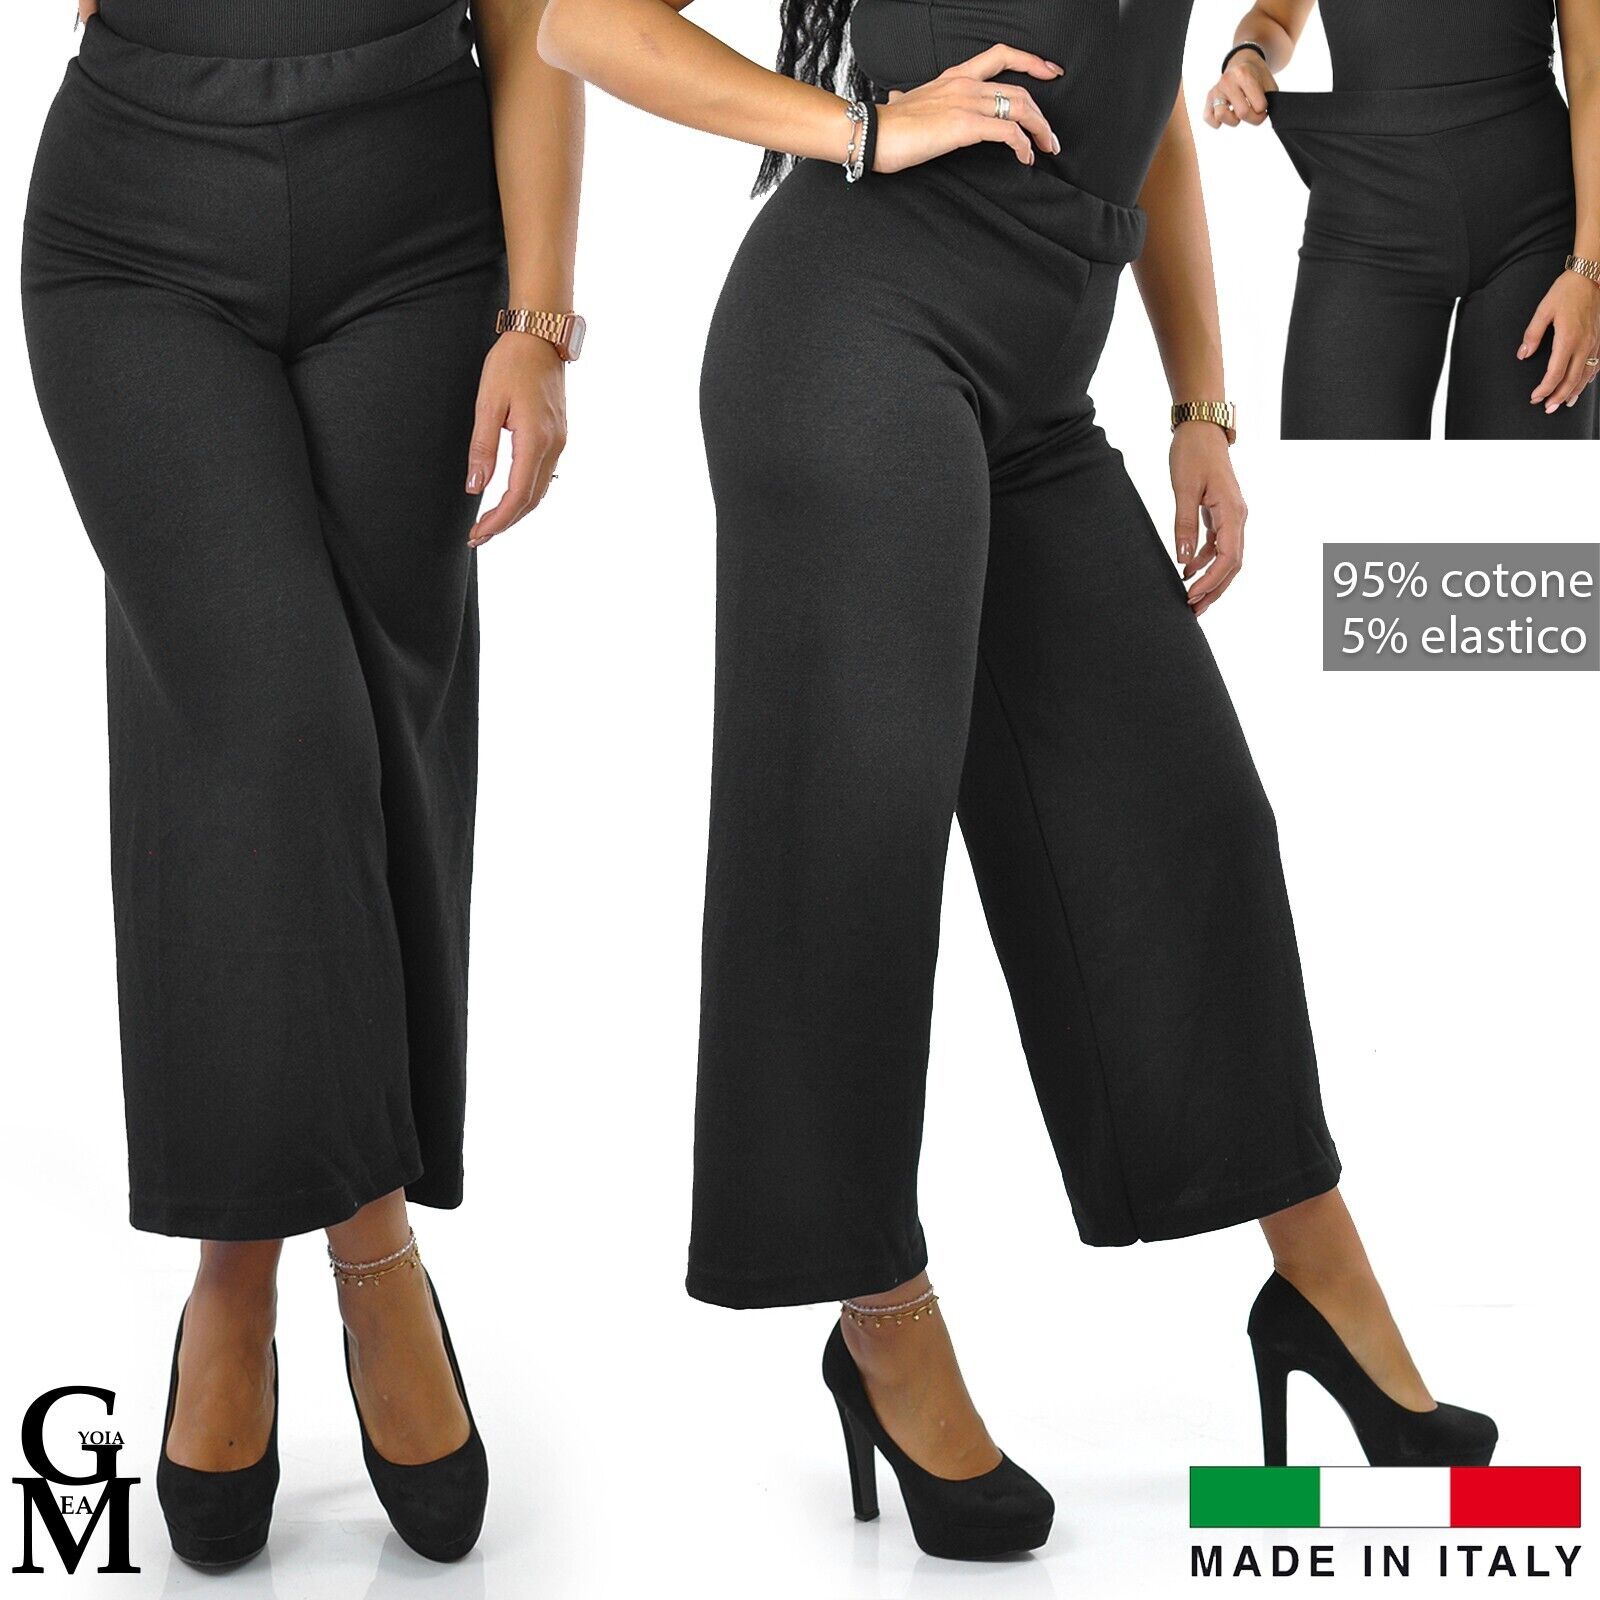 Pantalone largo pantapalazzo donna nero elasticizzato elegante